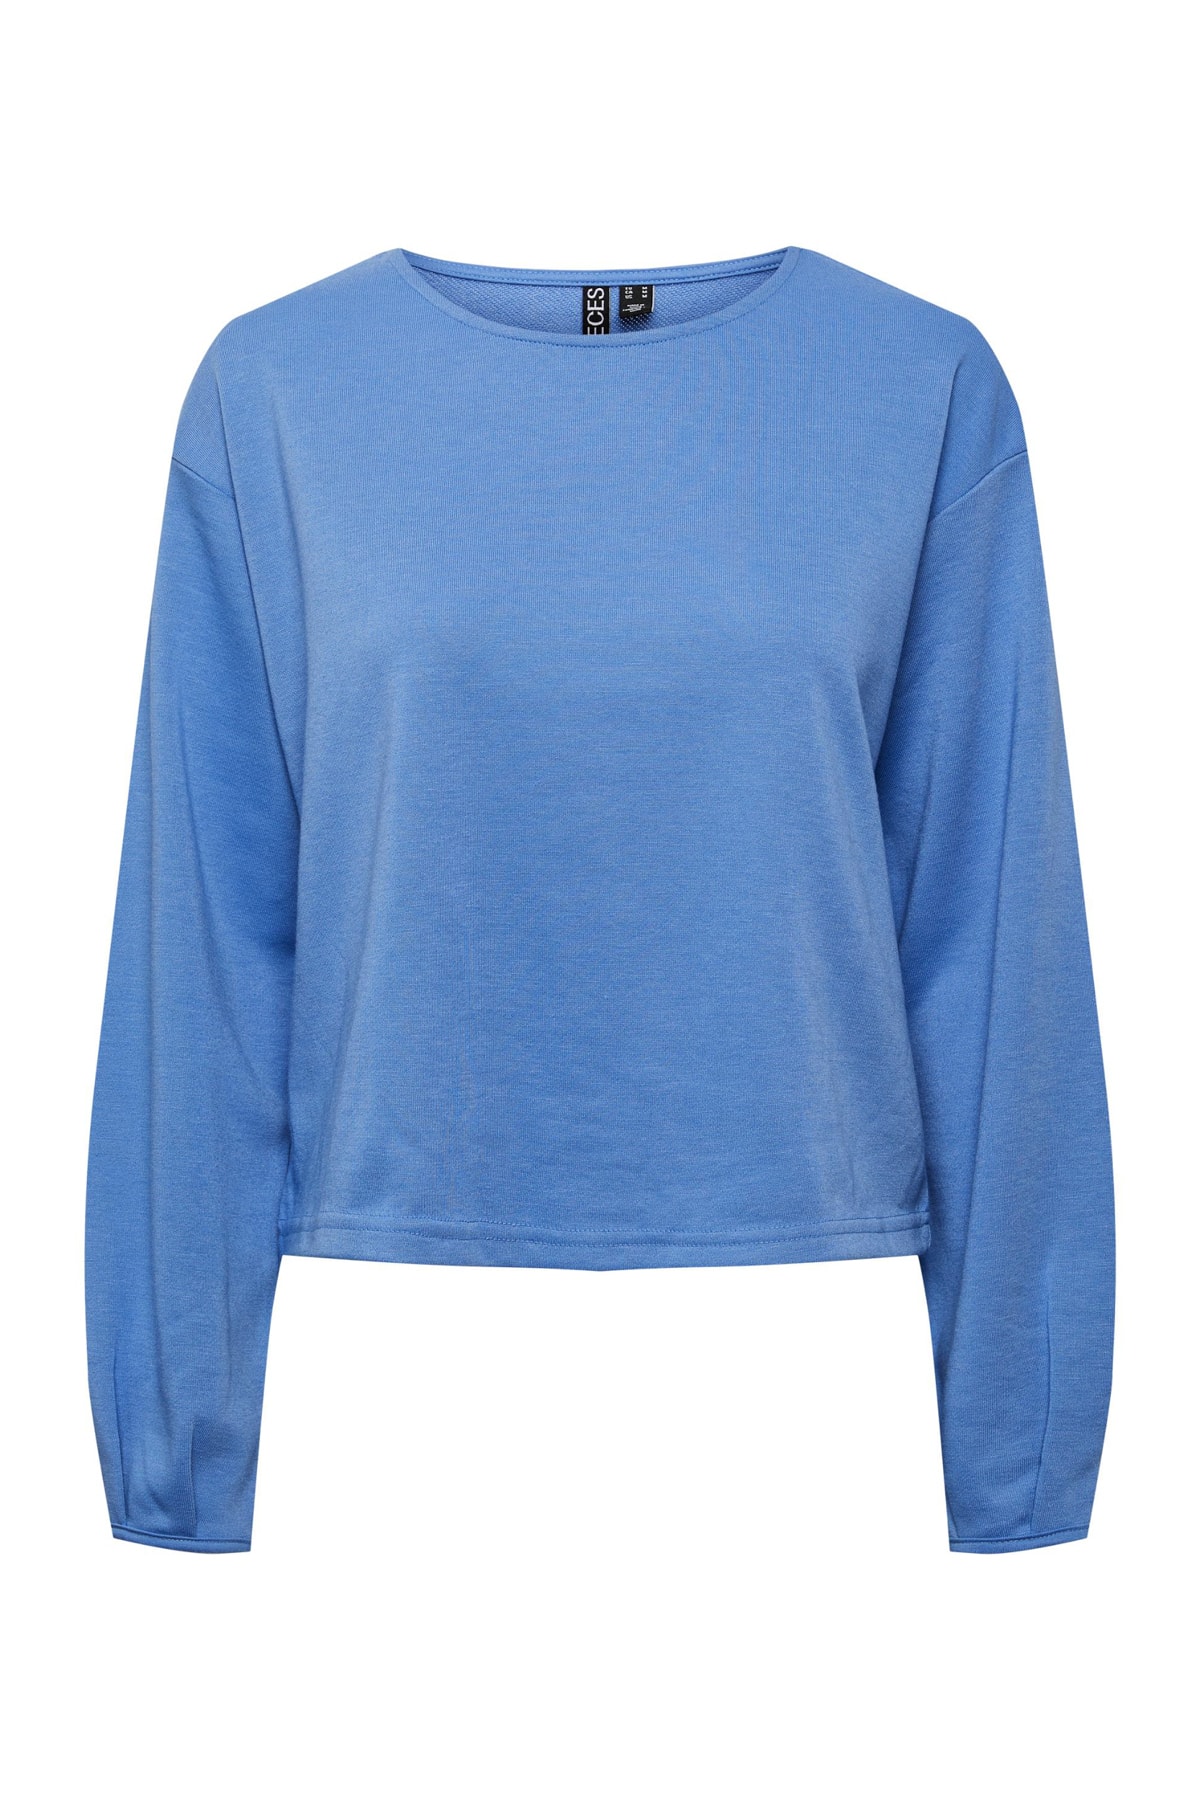 PIECES Sweatshirt Blau Regular Fit FN6537